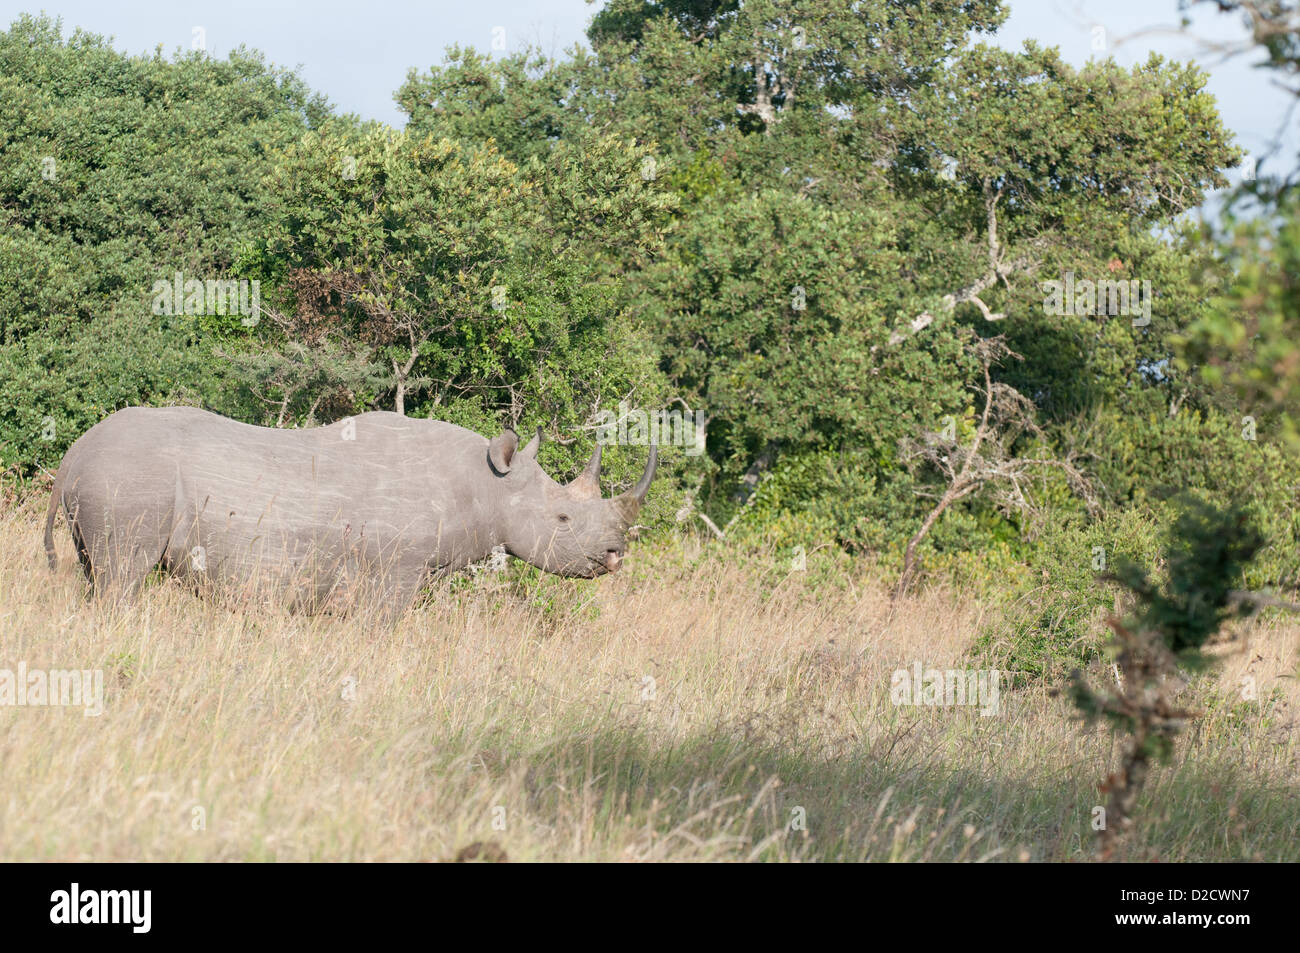 Le rhinocéros noir se déplaçant le long de l'herbe à la lisière d'une forêt, vu de son côté droit Banque D'Images